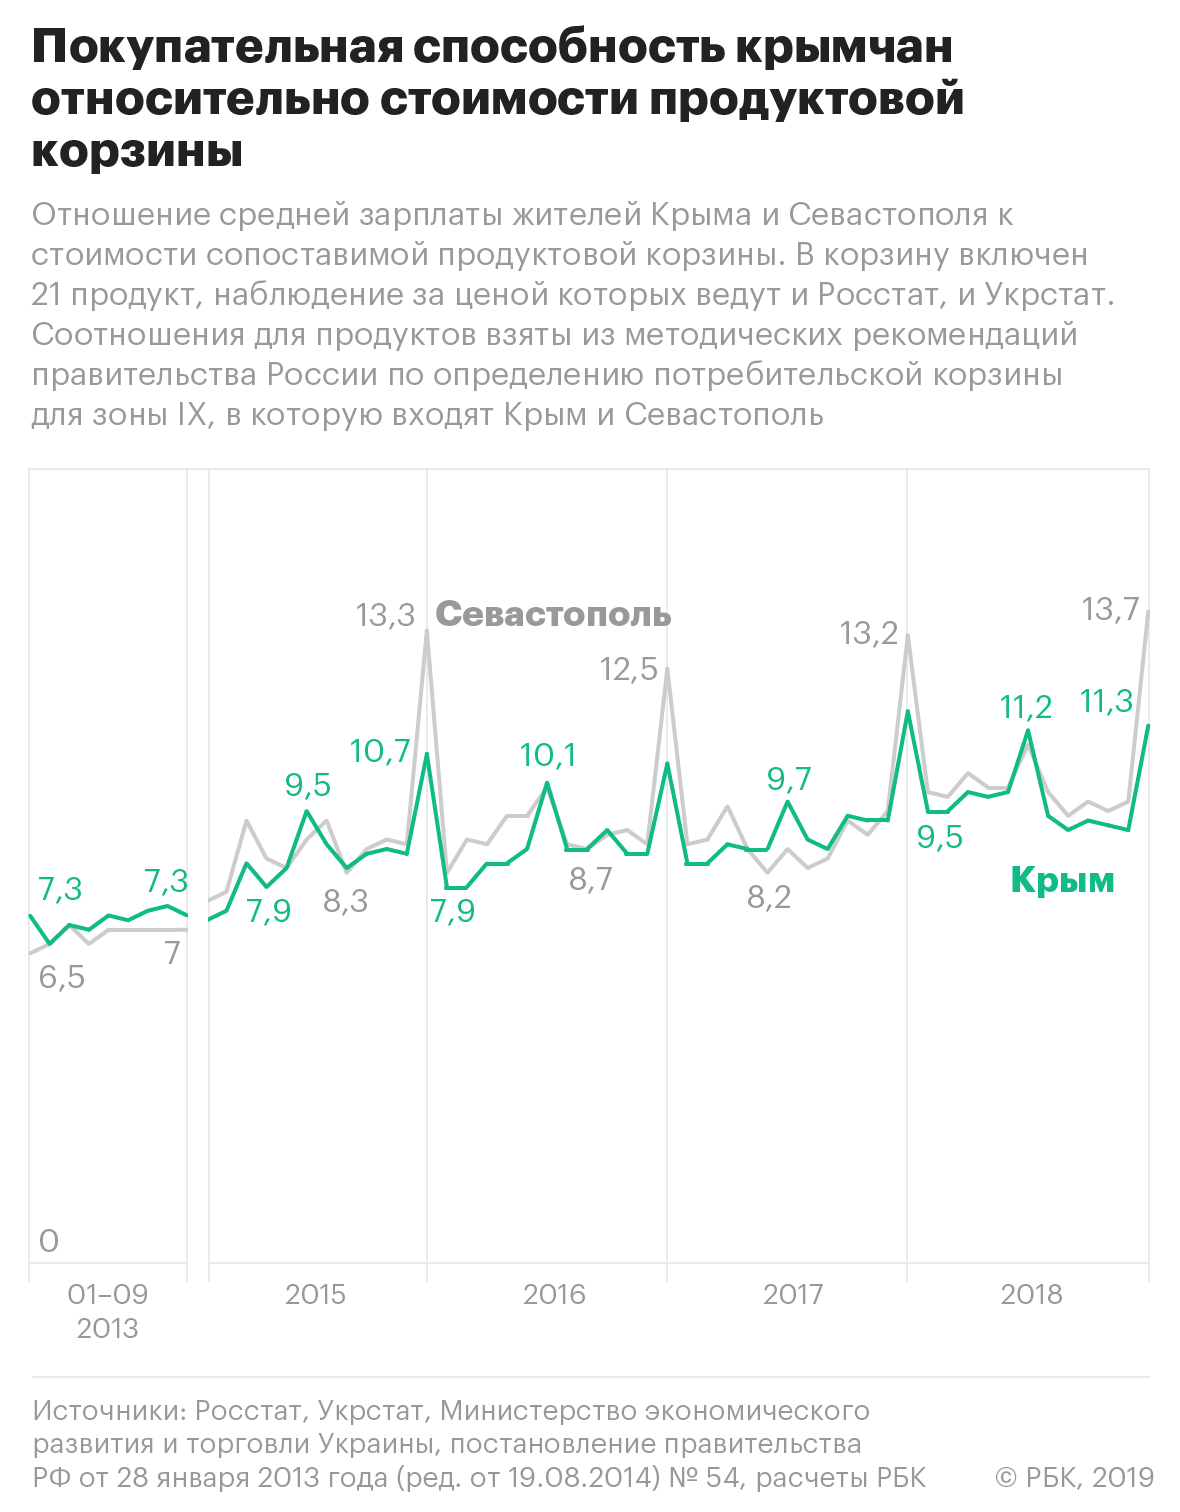 9 вопросов про 5 лет: что Крым получил от присоединения к России